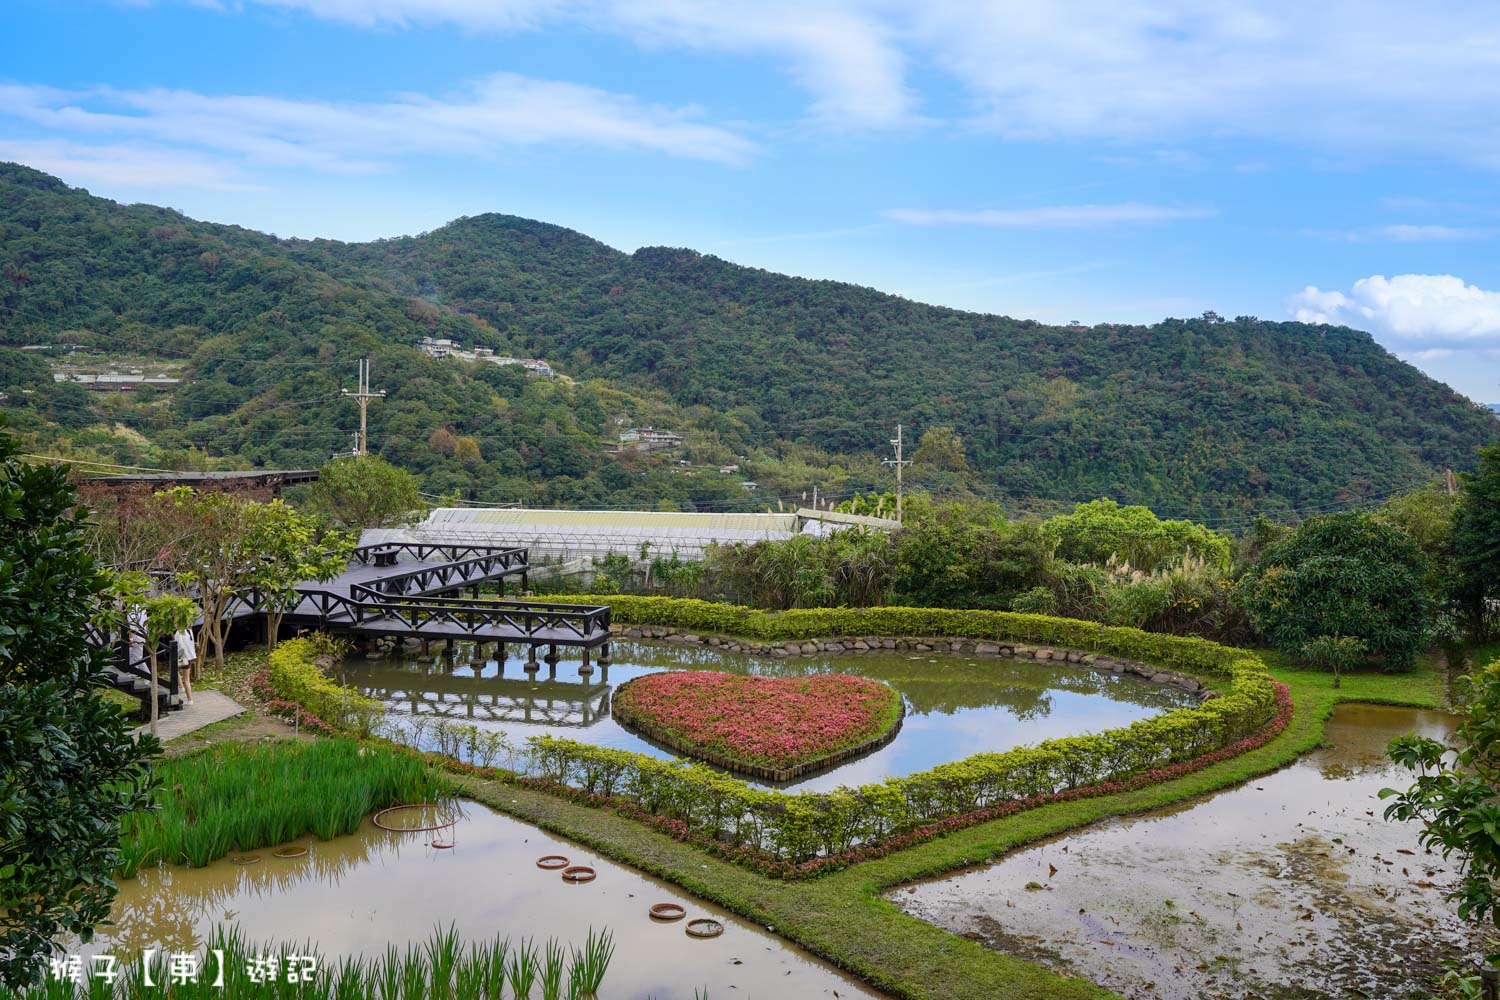 延伸閱讀：[台北] 內湖免費景點 同心池 生態濕地湧泉化身浪漫愛心 有情人一起來永結同心 漫步木棧步道 順遊週邊景點